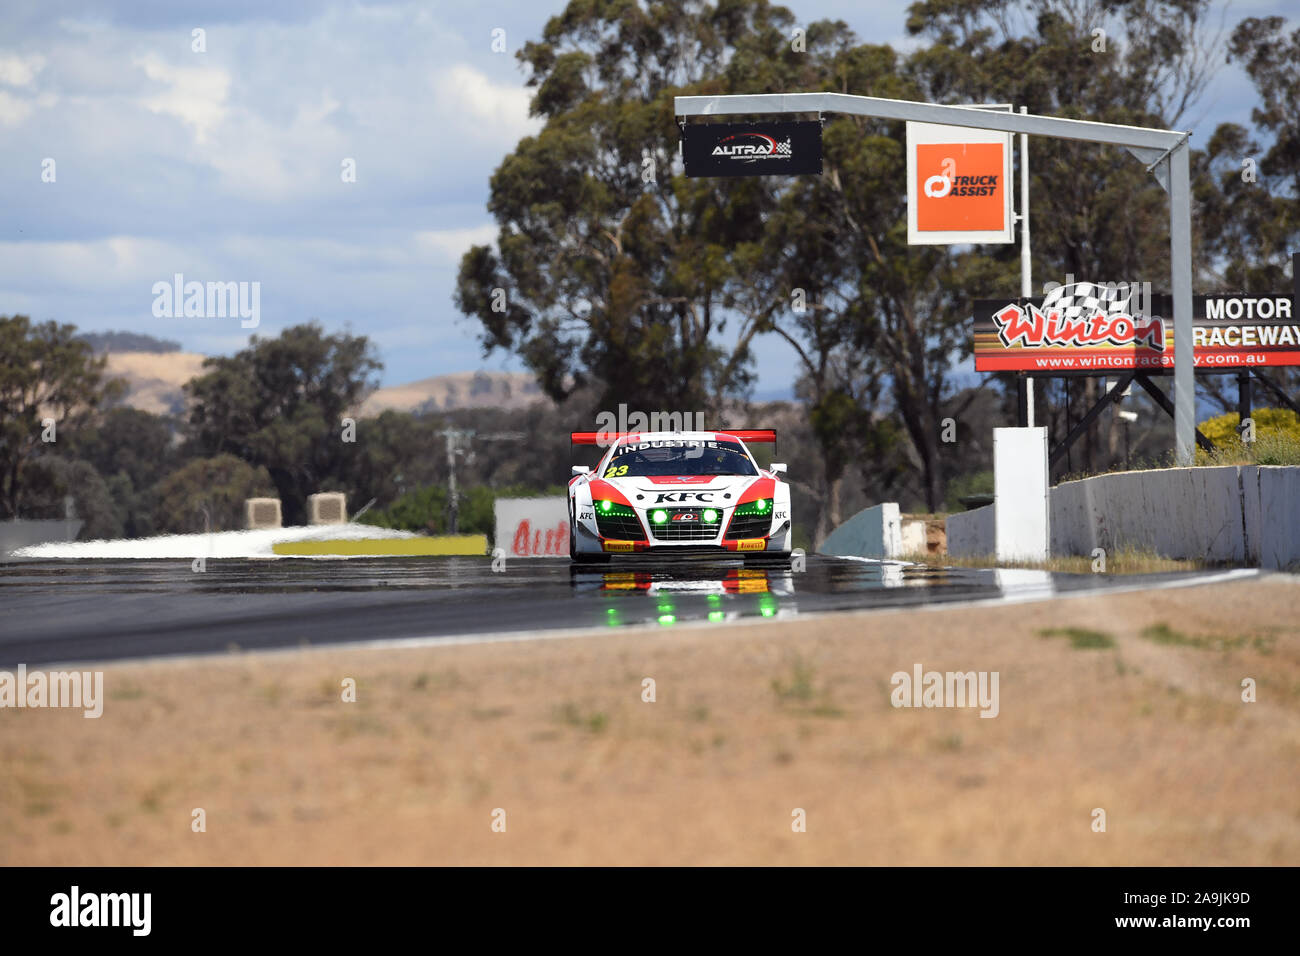 GT-1 Australia Matt Stoupas, KFC Motorsport.  Audi GT-1 Australia - Practice 2 Winton Raceway Stock Photo